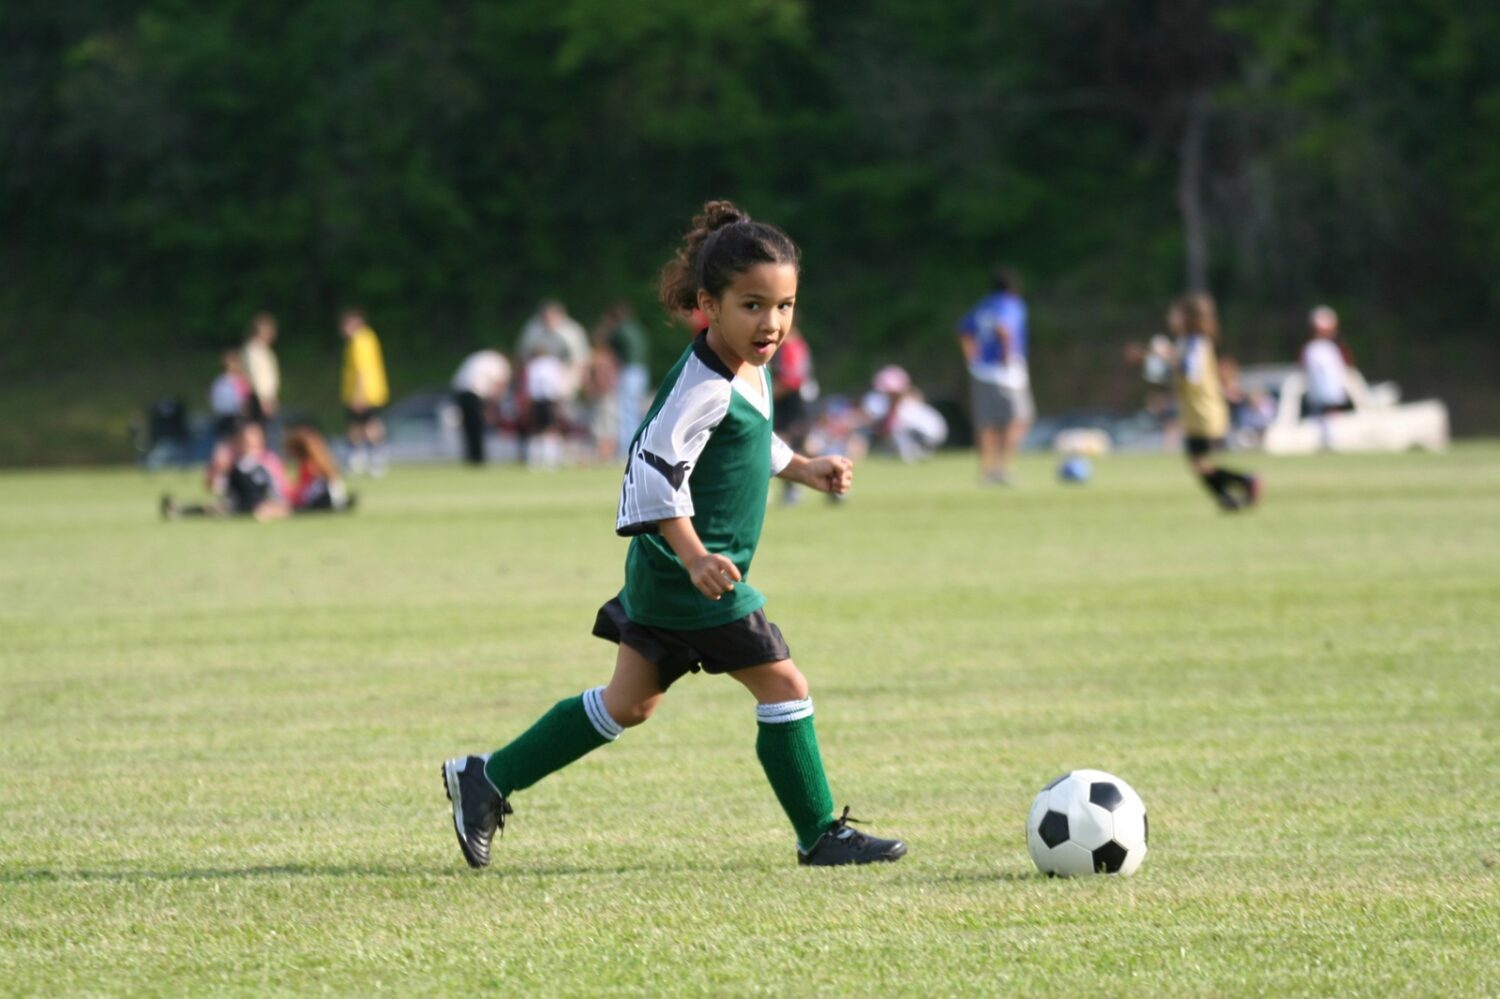 Viele Mädchen finden Spaß am Fußball - die Papas freuen sich